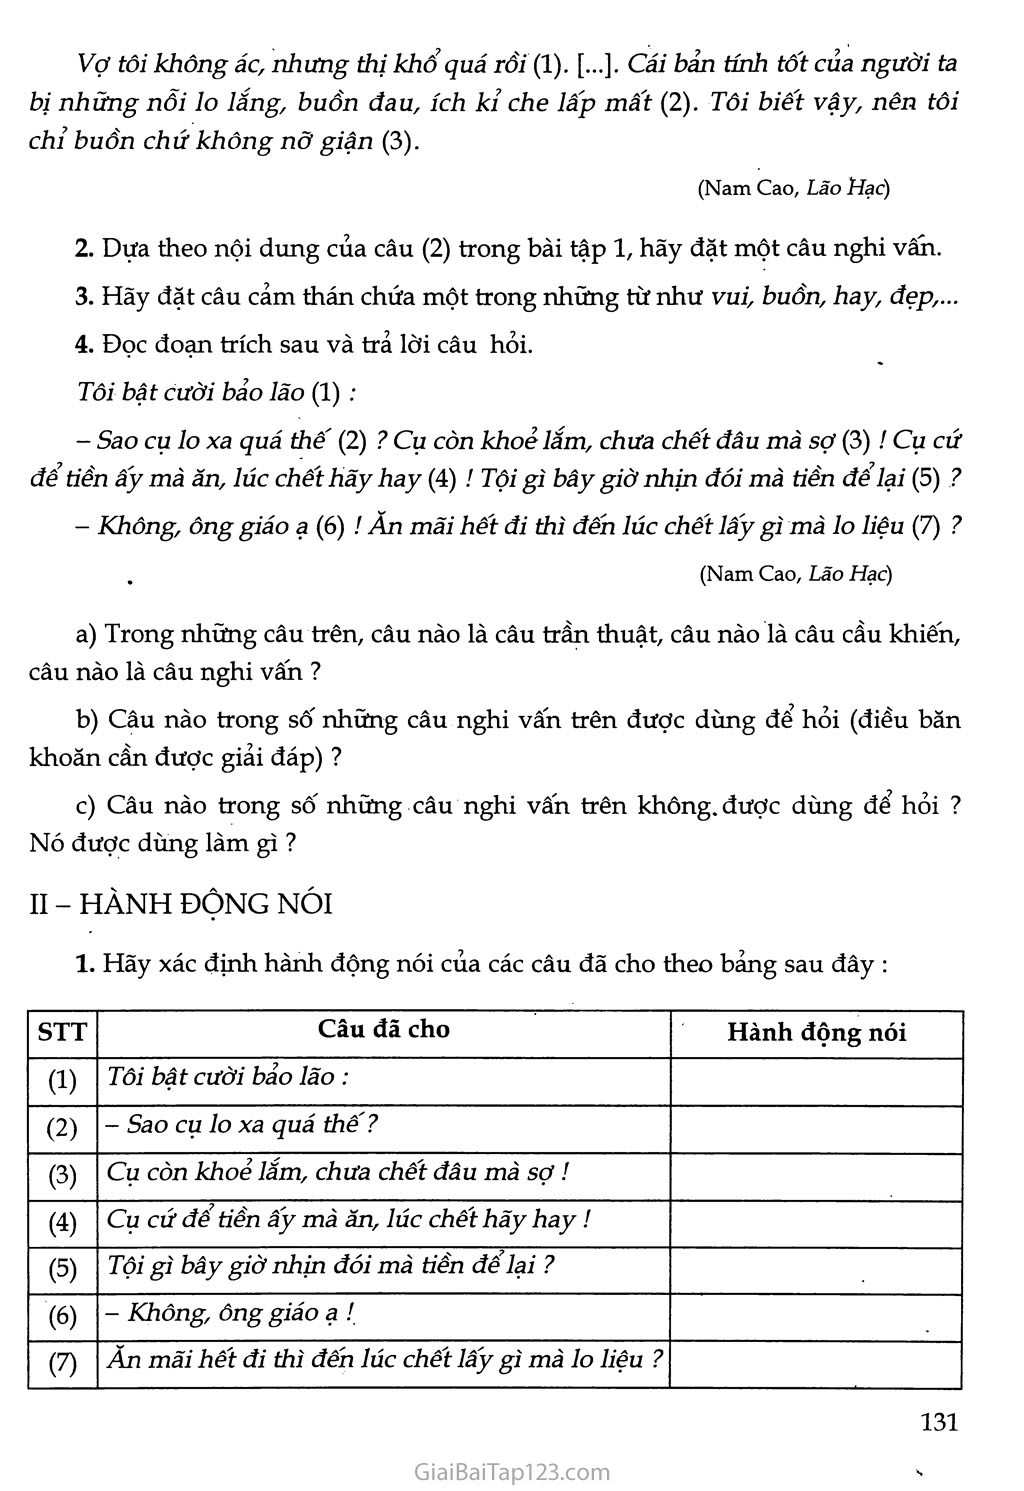 Ôn tập và kiểm tra phần Tiếng Việt trang 2